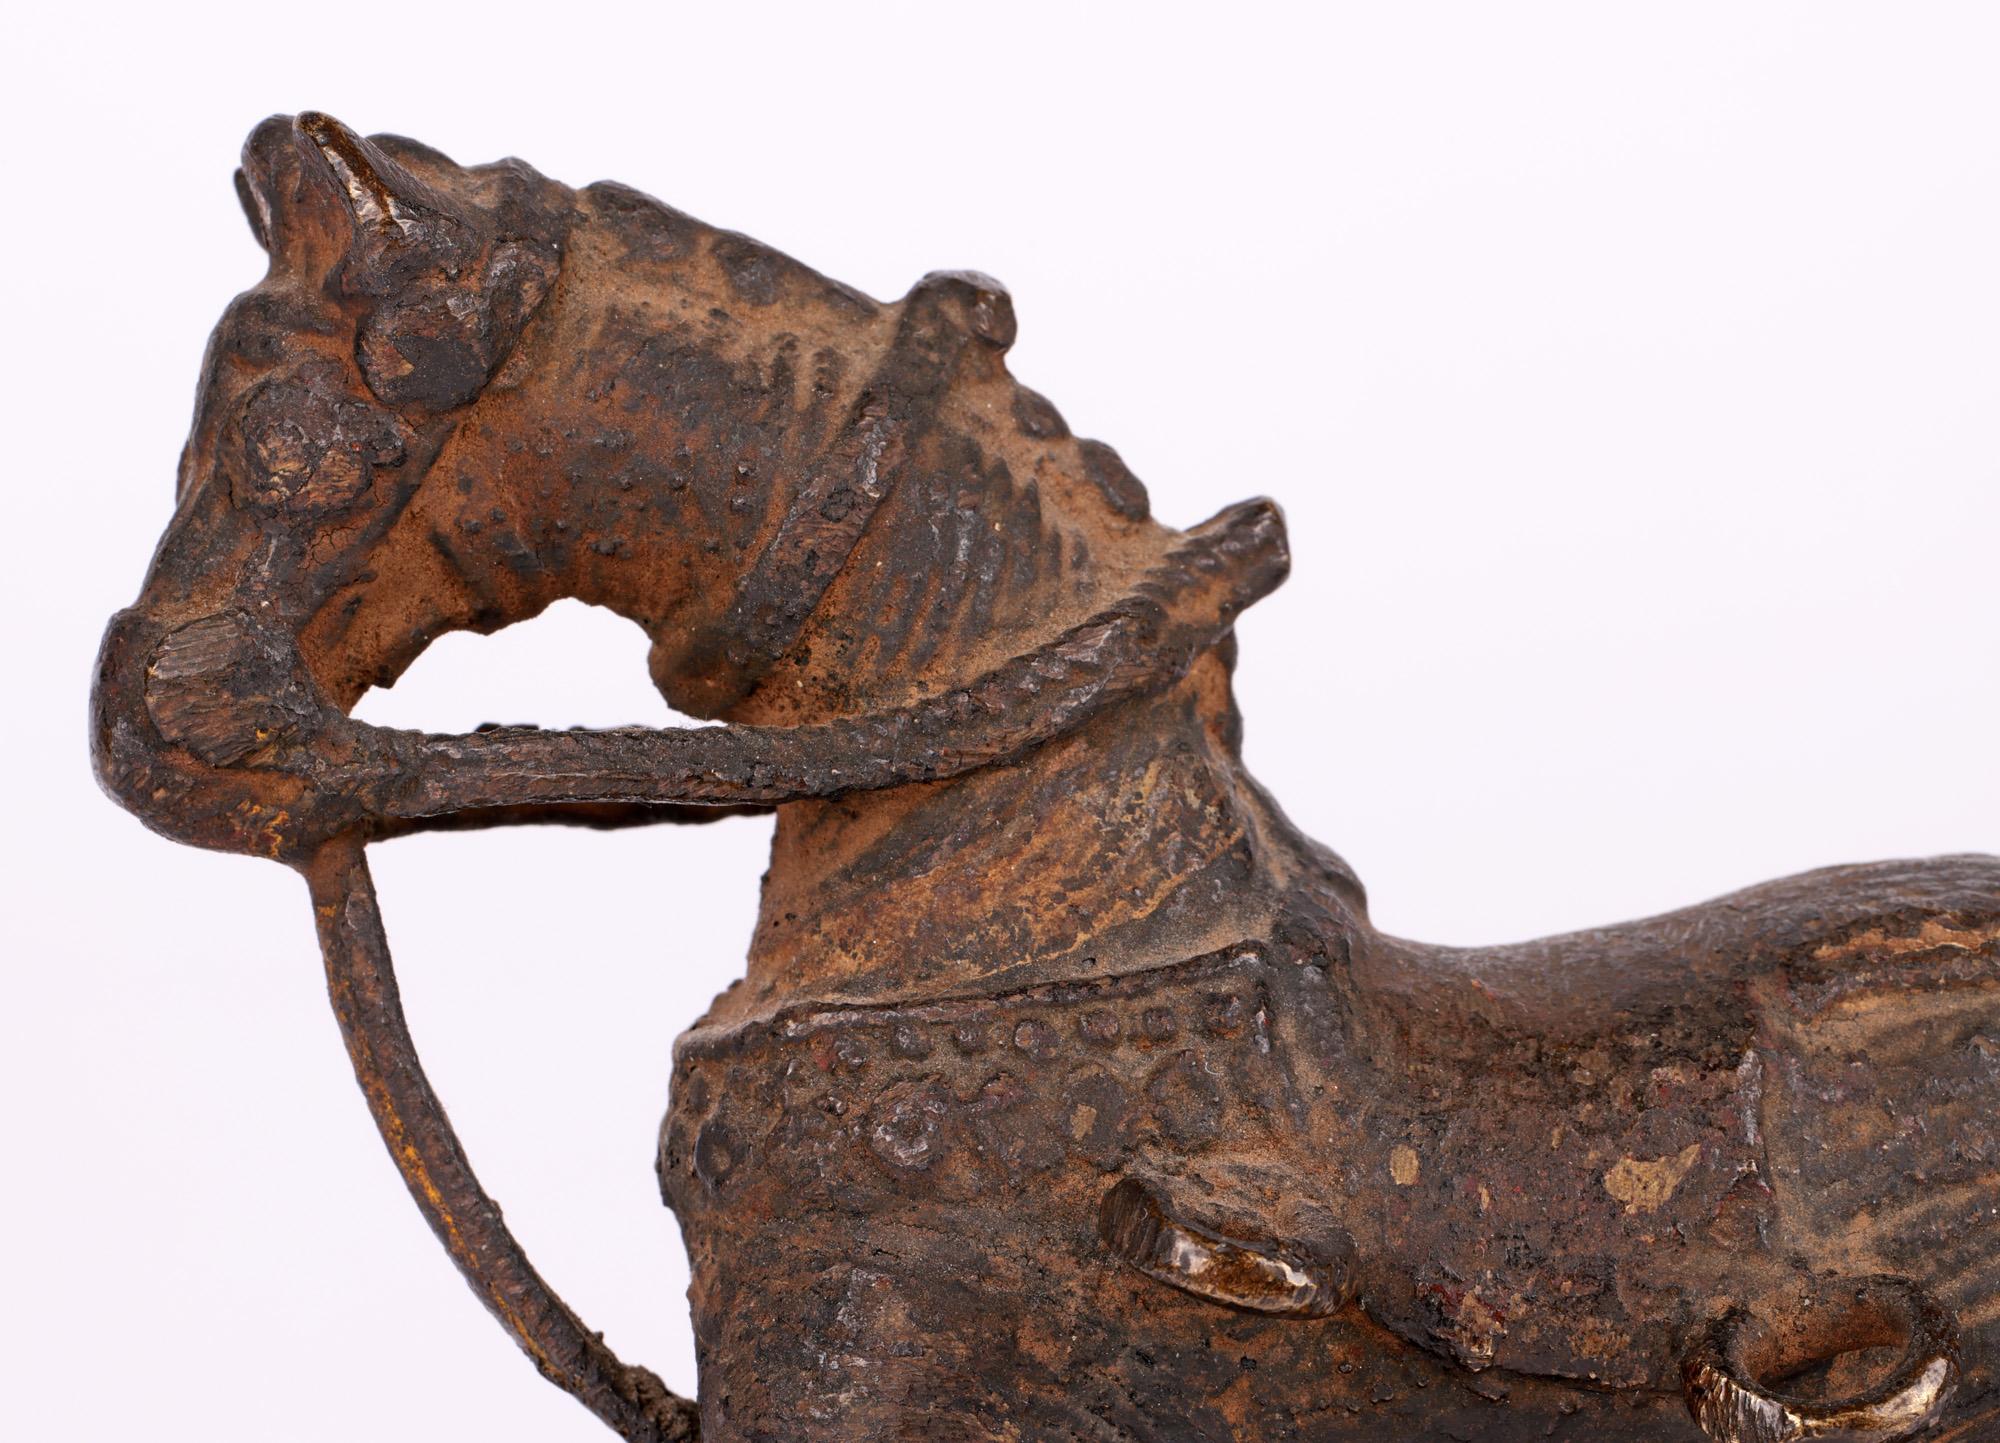 Un bon cheval de temple antique en bronze sur roues provenant de la ville de Jhansi dans le Bundelkhand en Inde du Nord et datant du 19ème siècle. La région hindoue du Bundelkhand est bien connue pour ses bronzes. Cet exemple ancien est coulé en